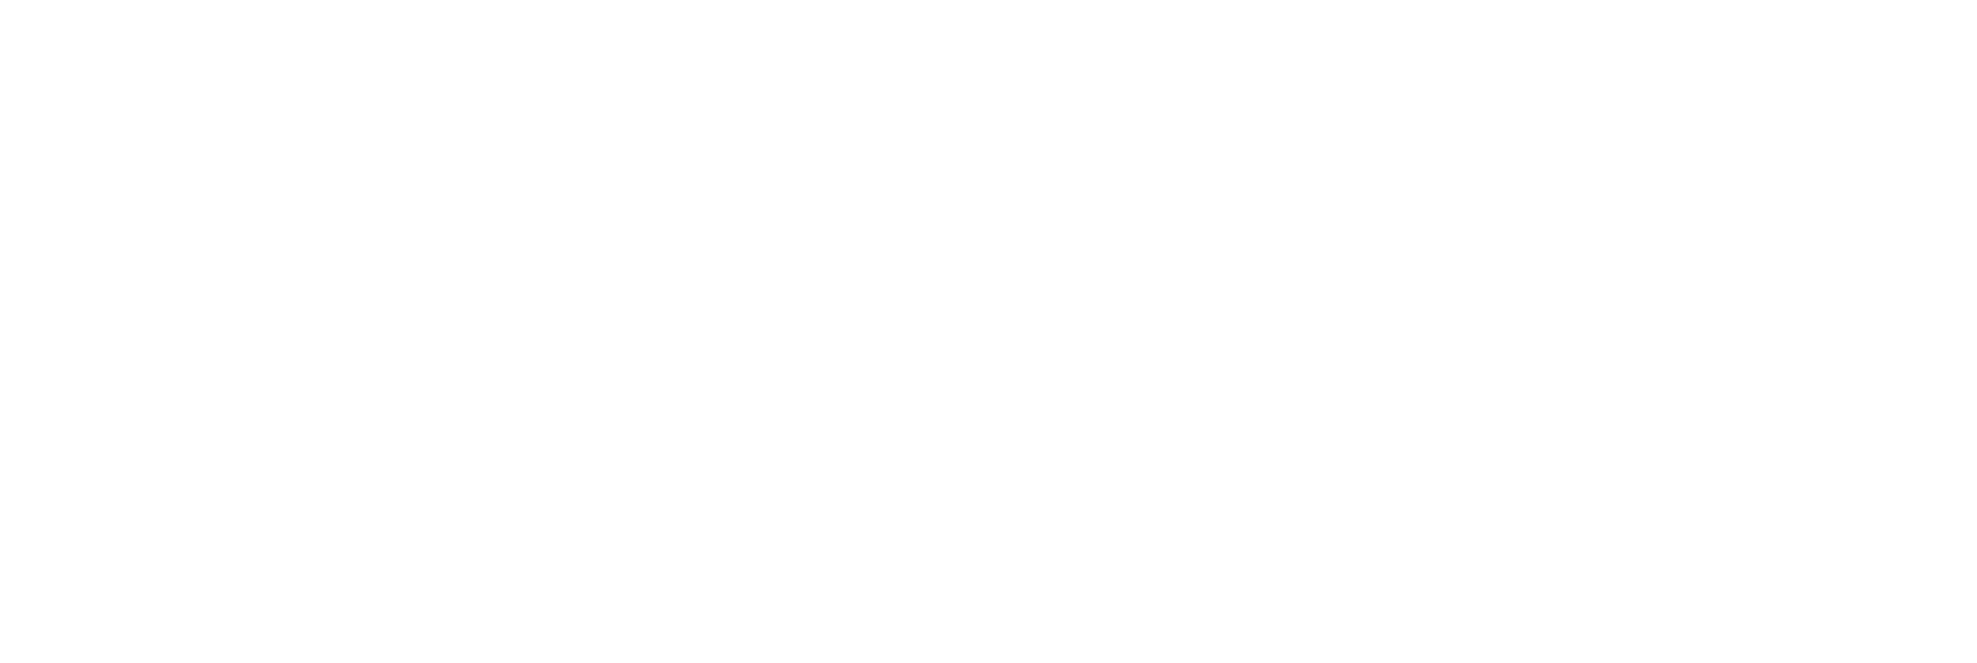 Coaltrans blog